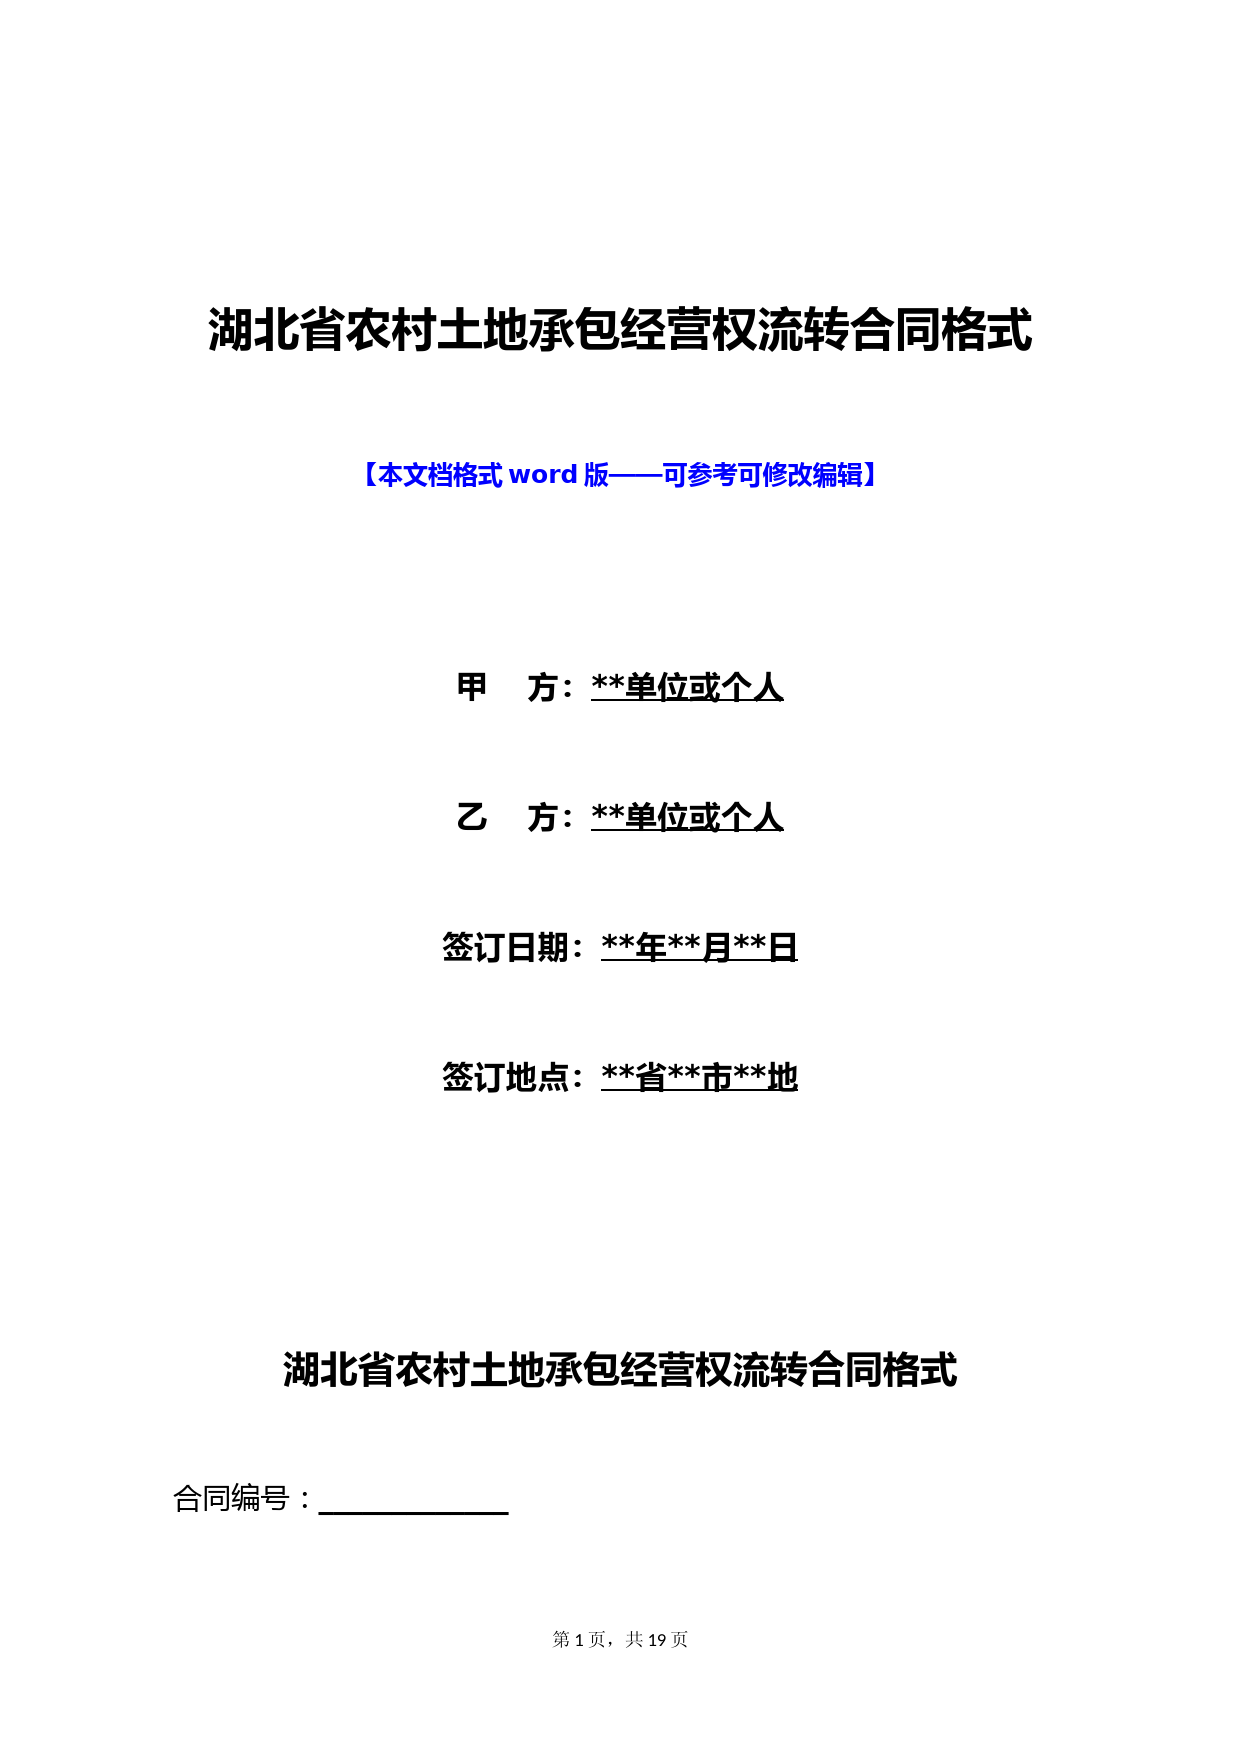 湖北省农村土地承包经营权流转合同格式(标准版)